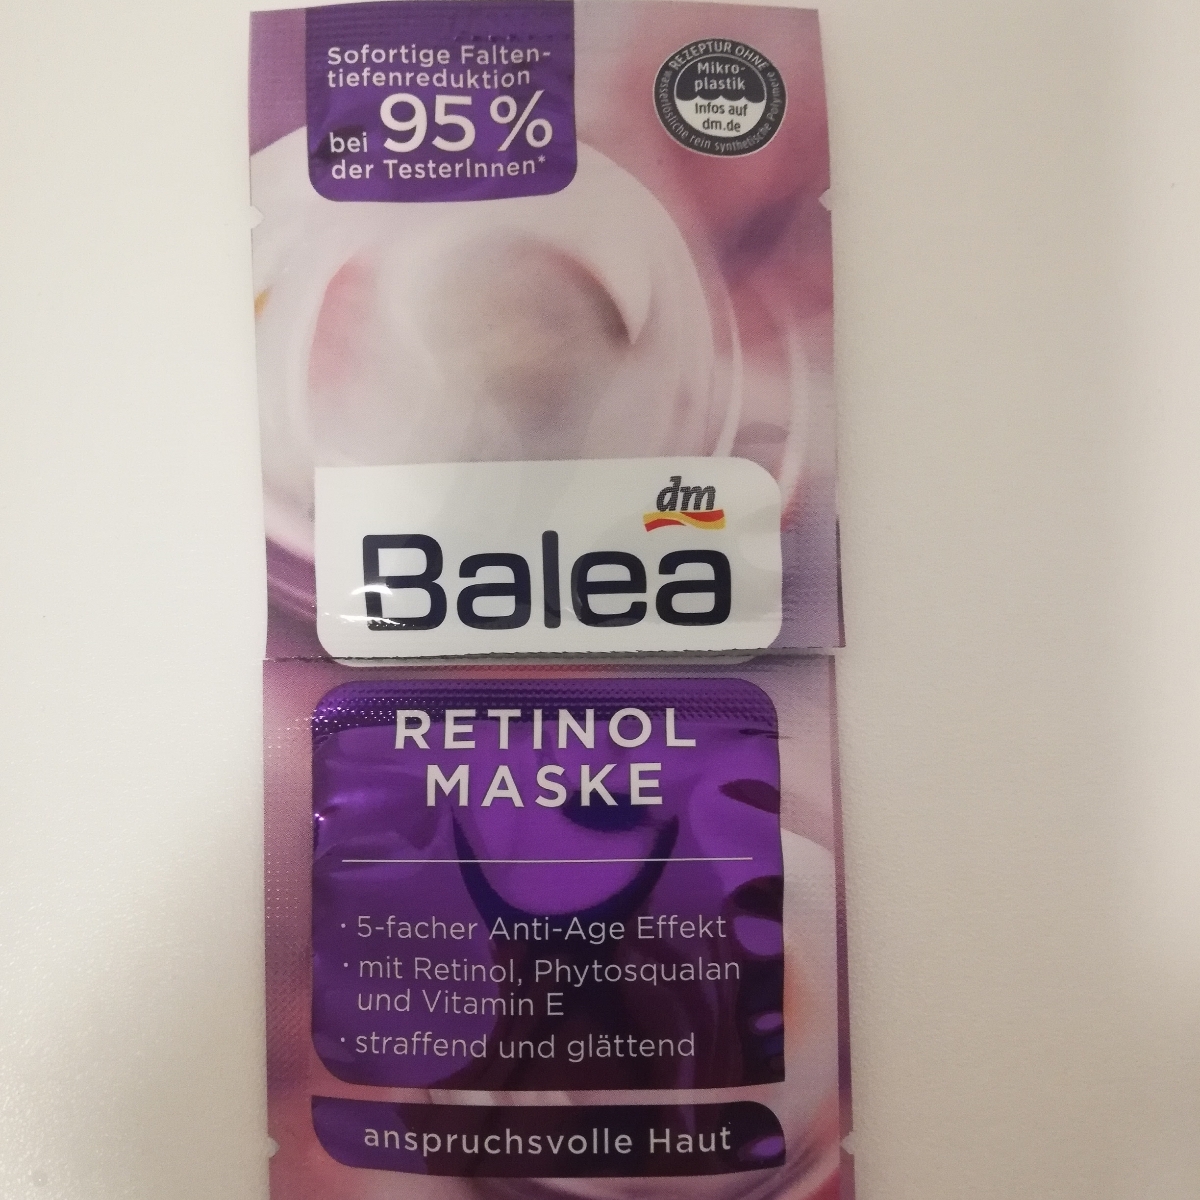 Dm balea Retinol Maske Reviews | abillion